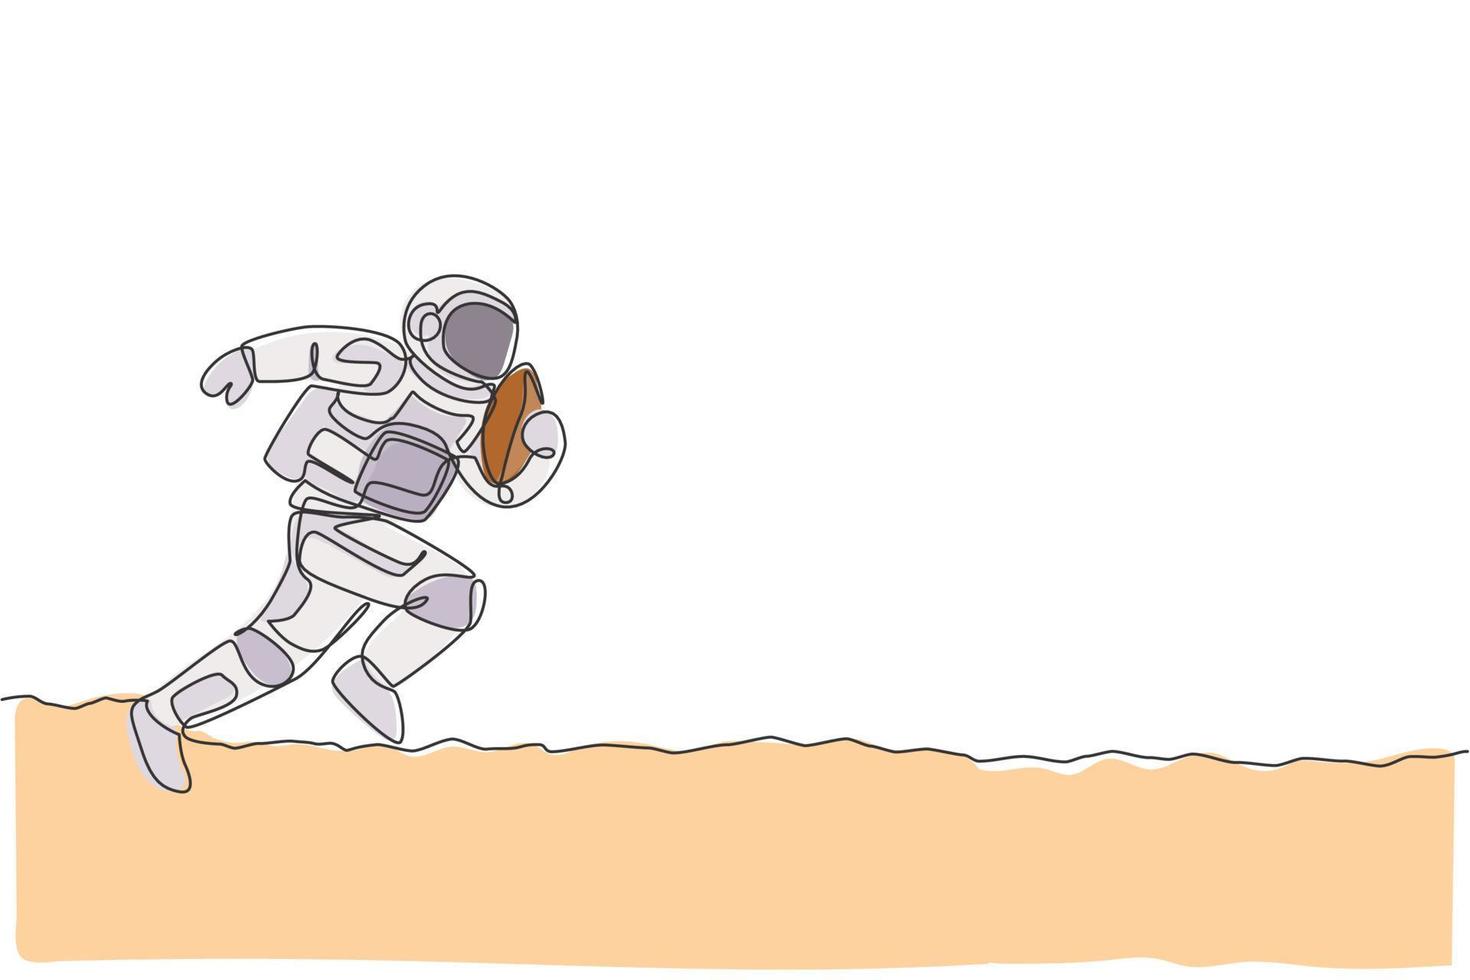 un disegno a tratteggio continuo dell'astronauta che pratica il football americano nella galassia dello spazio profondo. astronauta sano concetto di sport fitness. grafica dinamica dell'illustrazione di vettore di disegno di disegno di linea singola